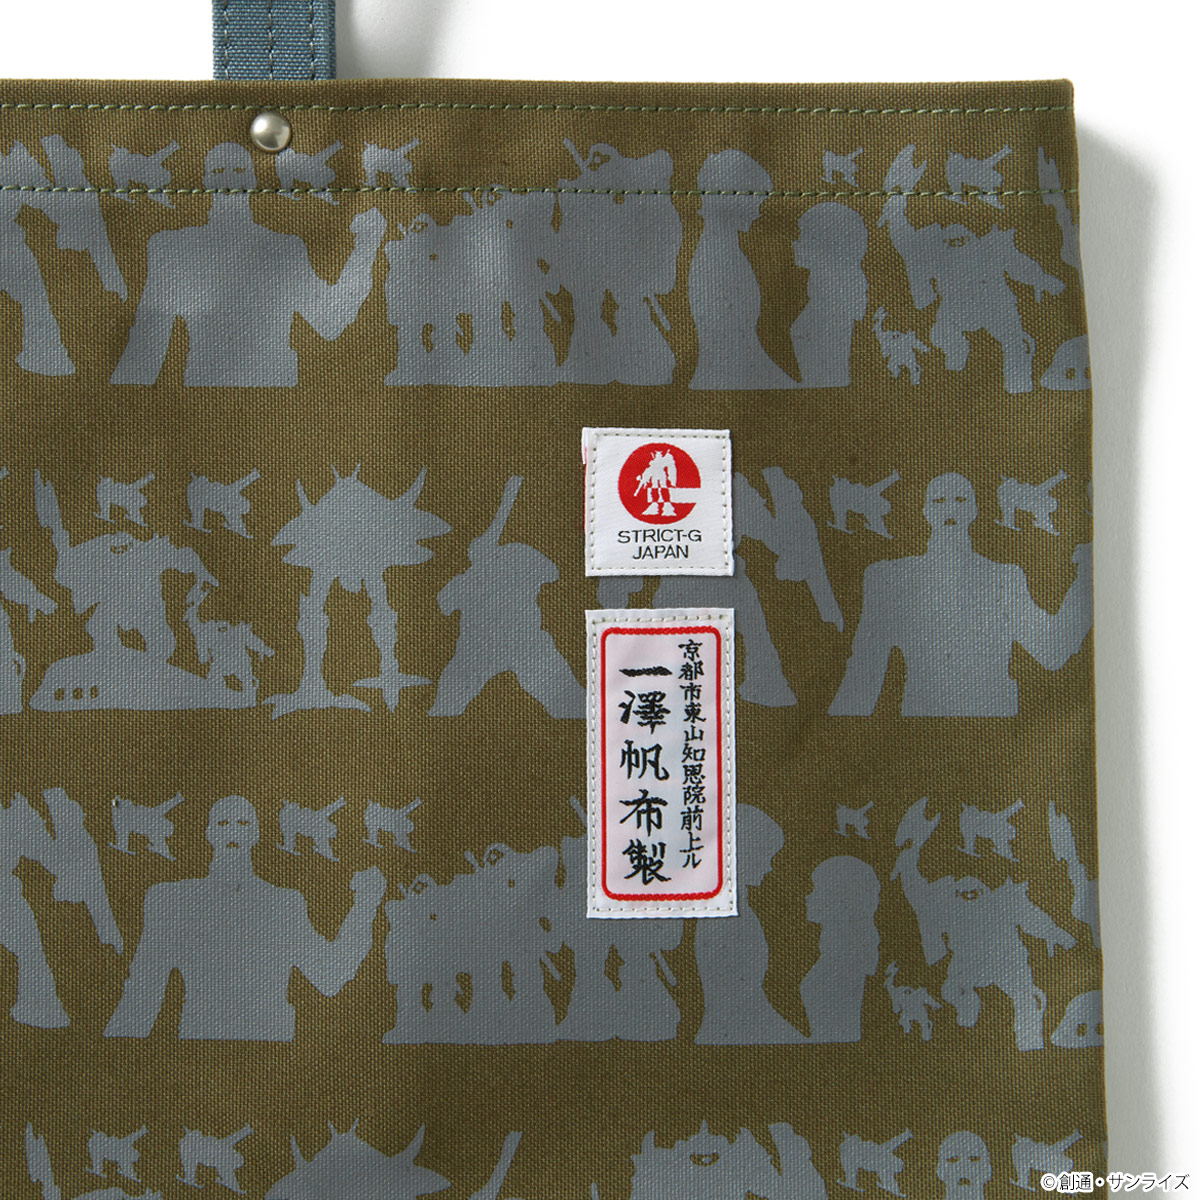 『機動戦士ガンダム』モチーフにしたSTRICT-G ×「一澤信三郎帆布」初のコラボレーションアイテムが登場！